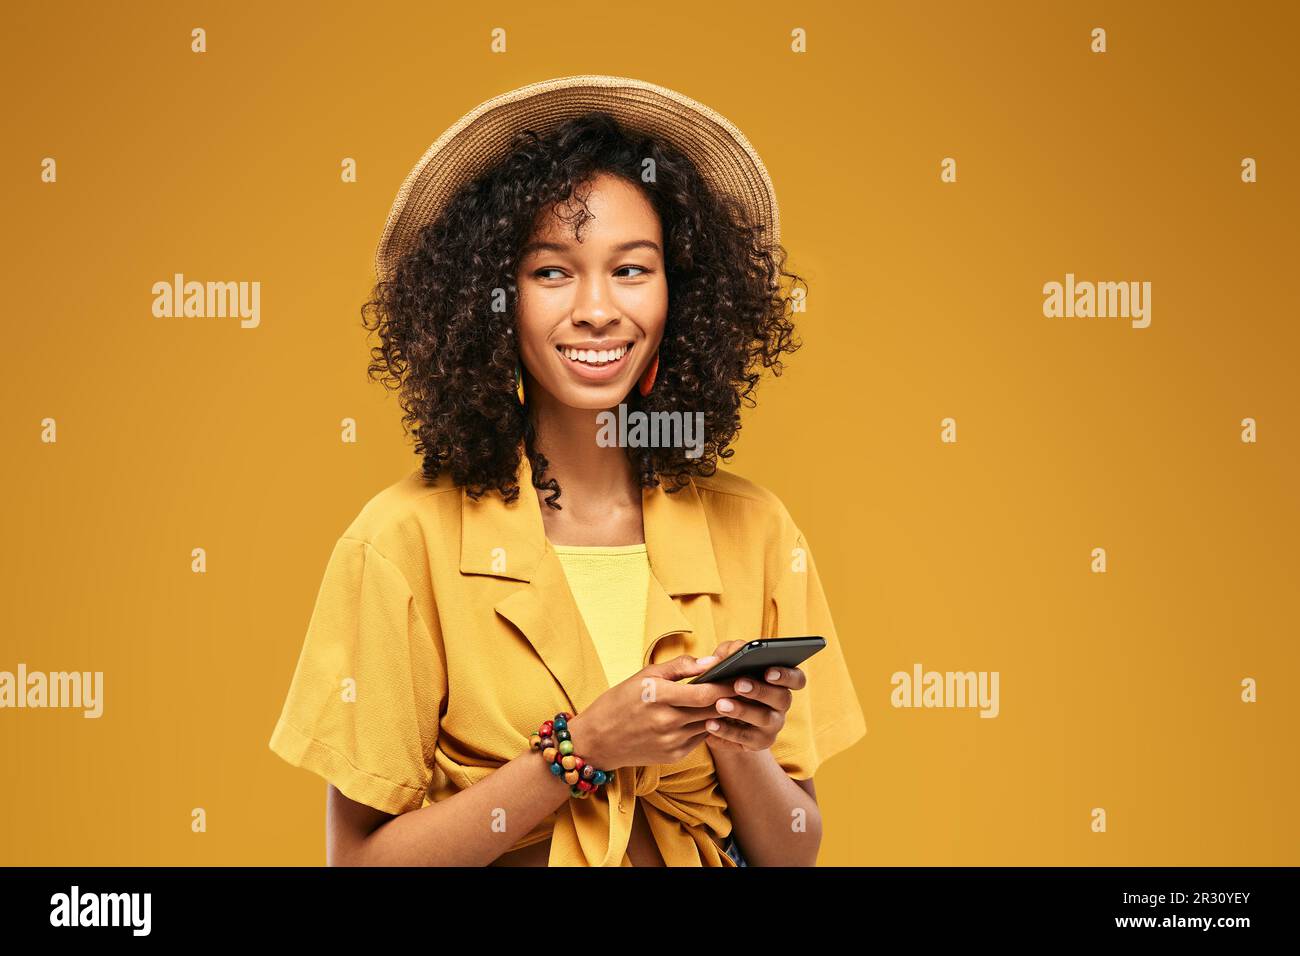 Eine afroamerikanische Frau, die auf ihrem Smartphone eine Nachricht schreibt und lustige, gekleidete Strohmütze und Jugendkleidung auf gelbem Hintergrund trägt Stockfoto